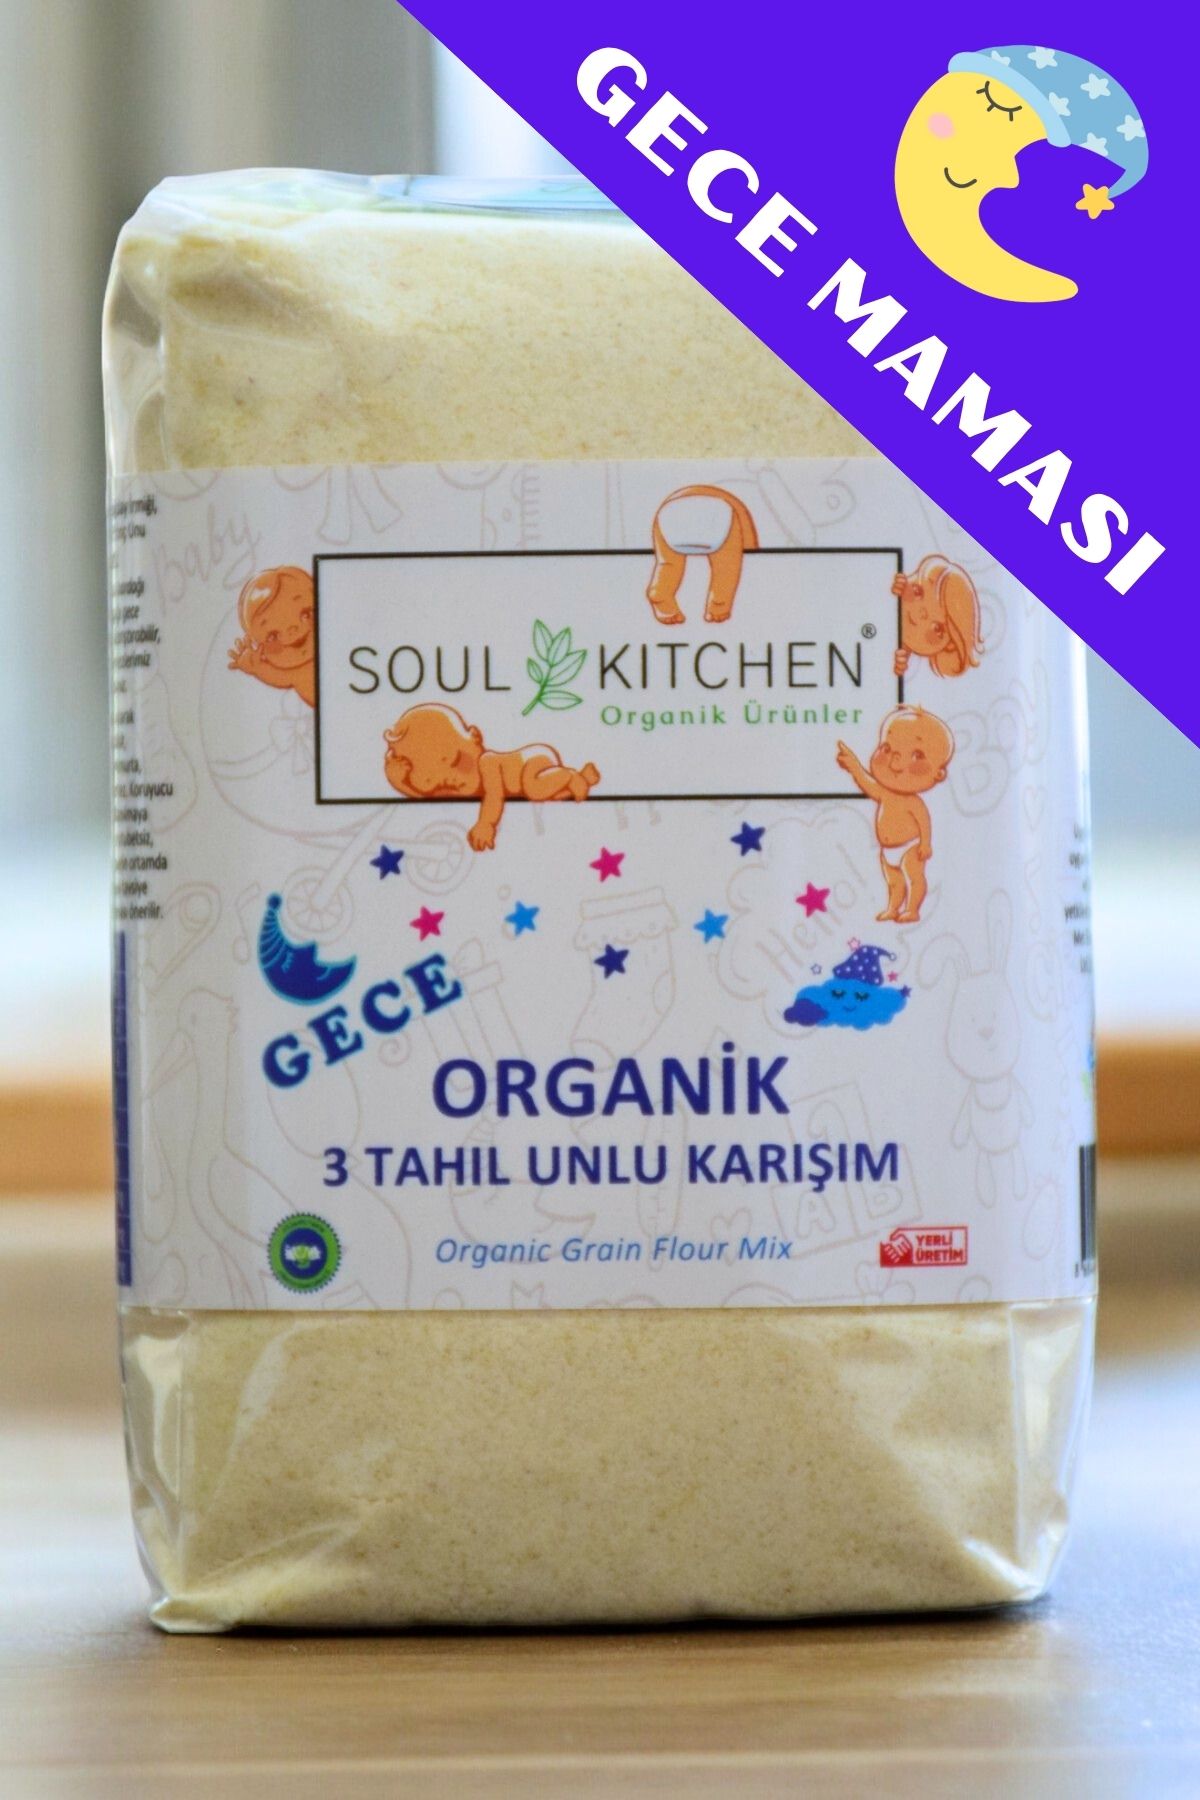 Soul Kitchen Organik Ürünler Organik Bebek Gece Maması 3 Tahıl Unlu Karışım 250gr